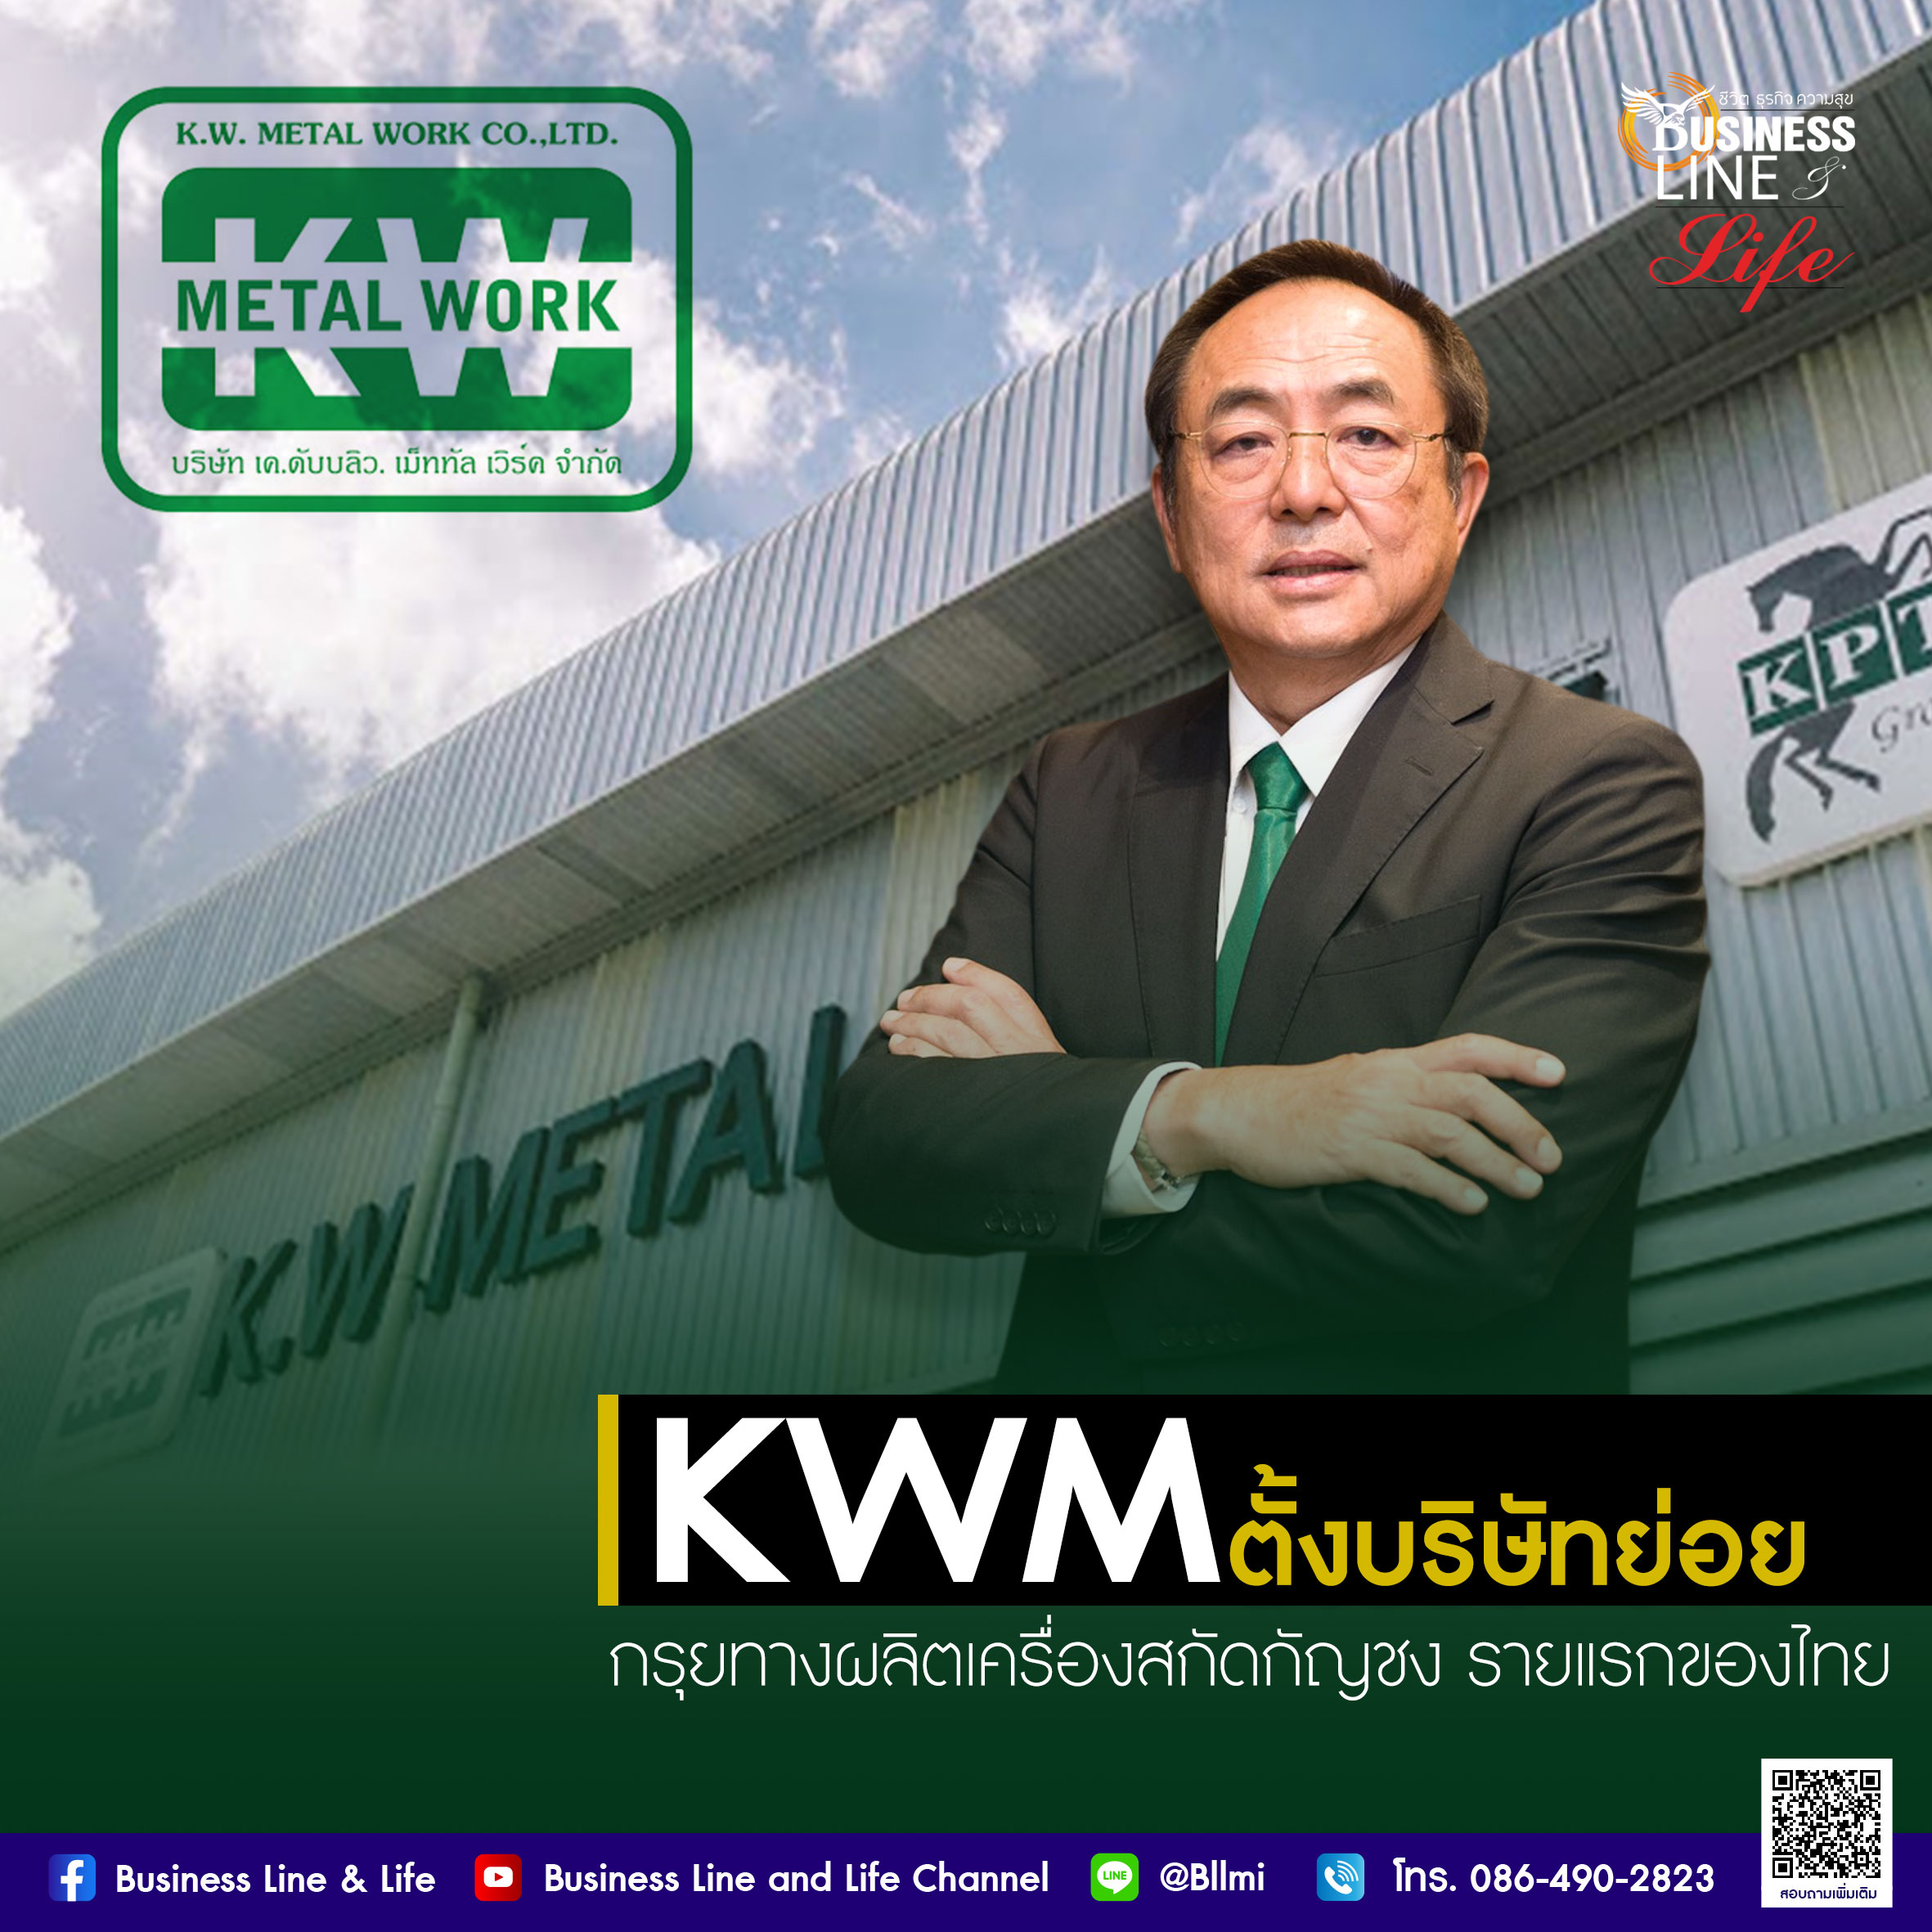 KWM มาตามนัด บอร์ดไฟเขียว ตั้งบริษัทย่อย 2 บริษัท  กรุยทางสู่การเป็นผู้นำด้านการผลิตเครื่องสกัดกัญชง   รายแรกของไทย